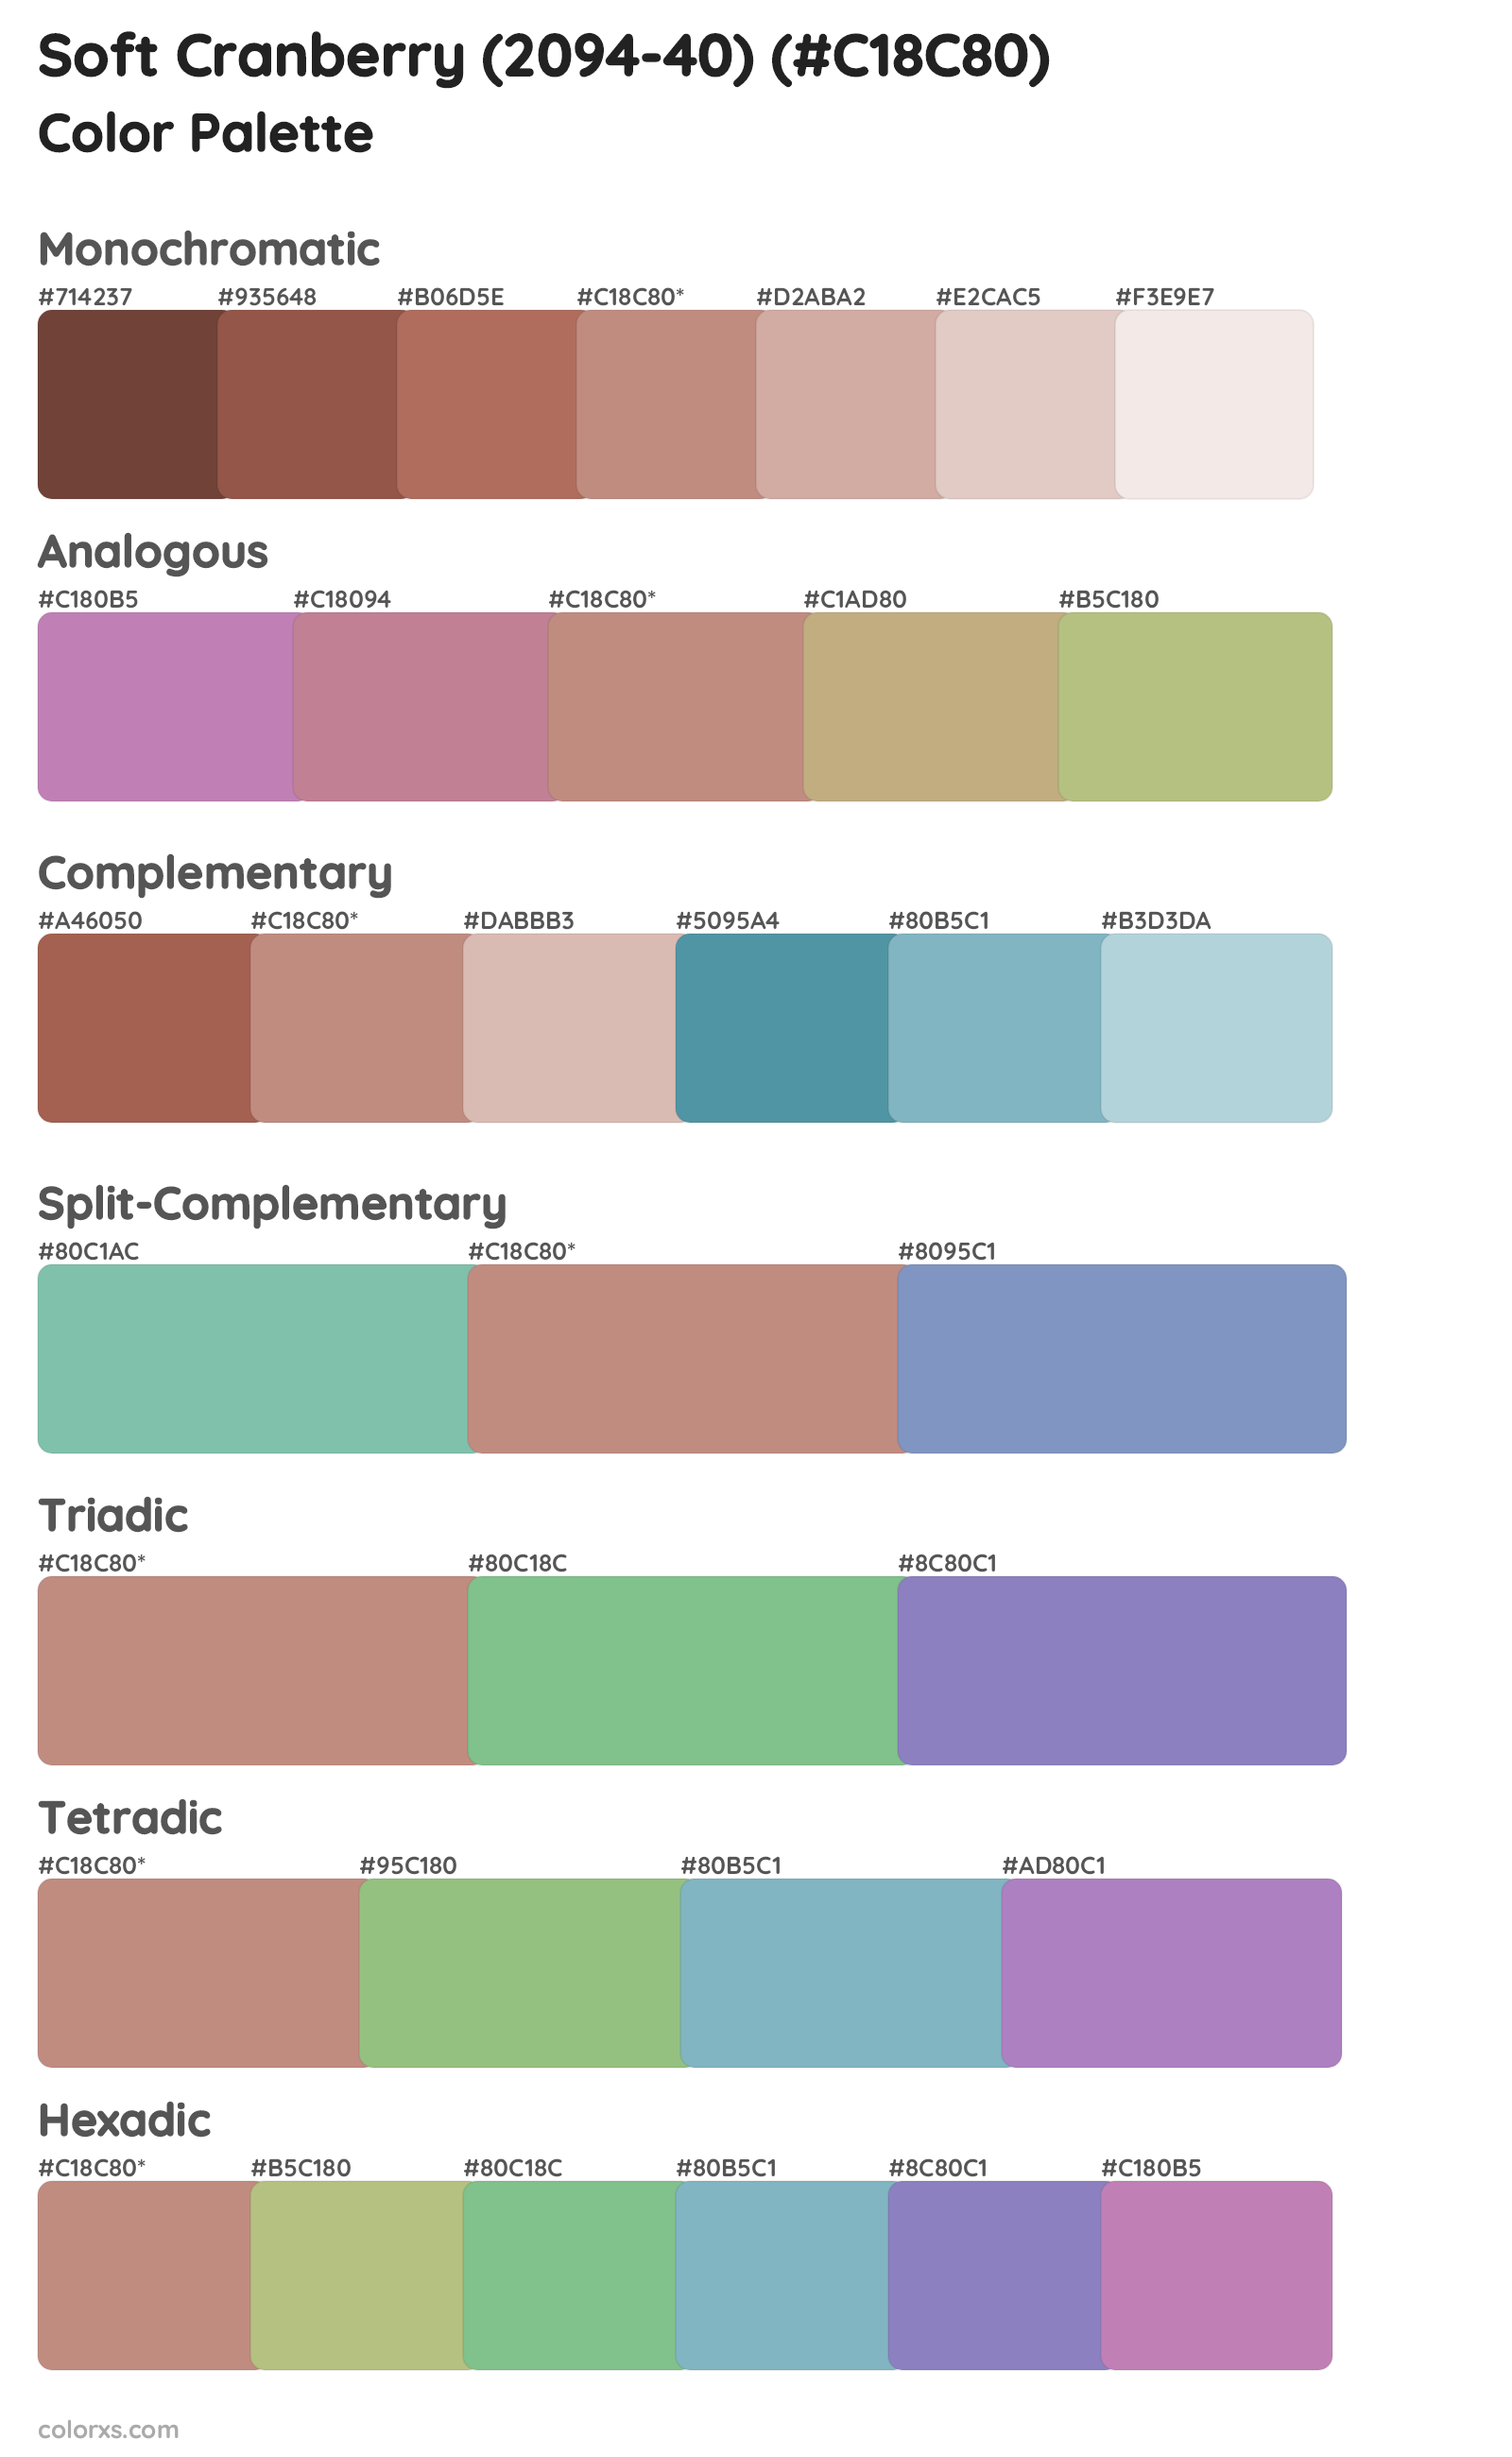 Soft Cranberry (2094-40) Color Scheme Palettes